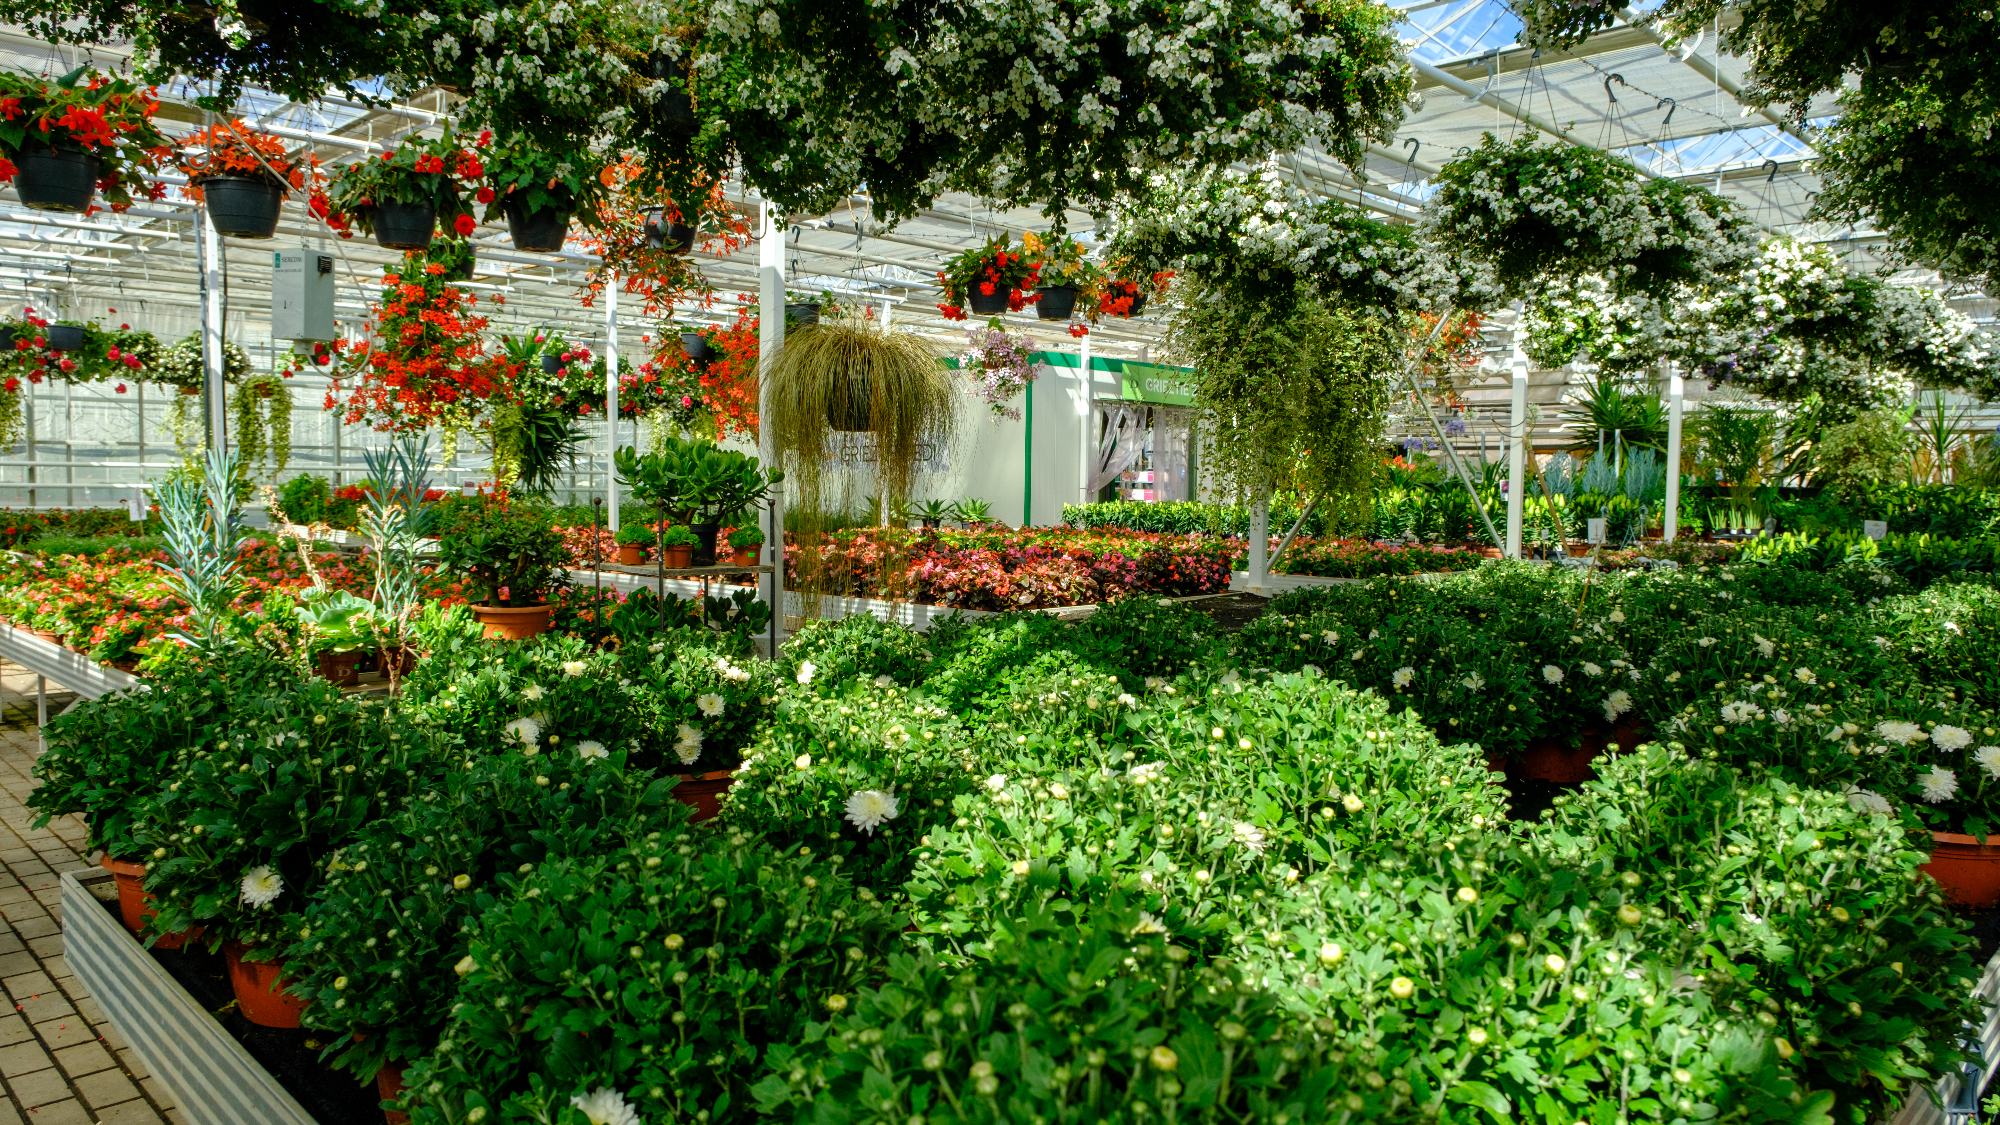 Vrtni center Gašperlin nam ponuja čisto vse, kar potrebujemo